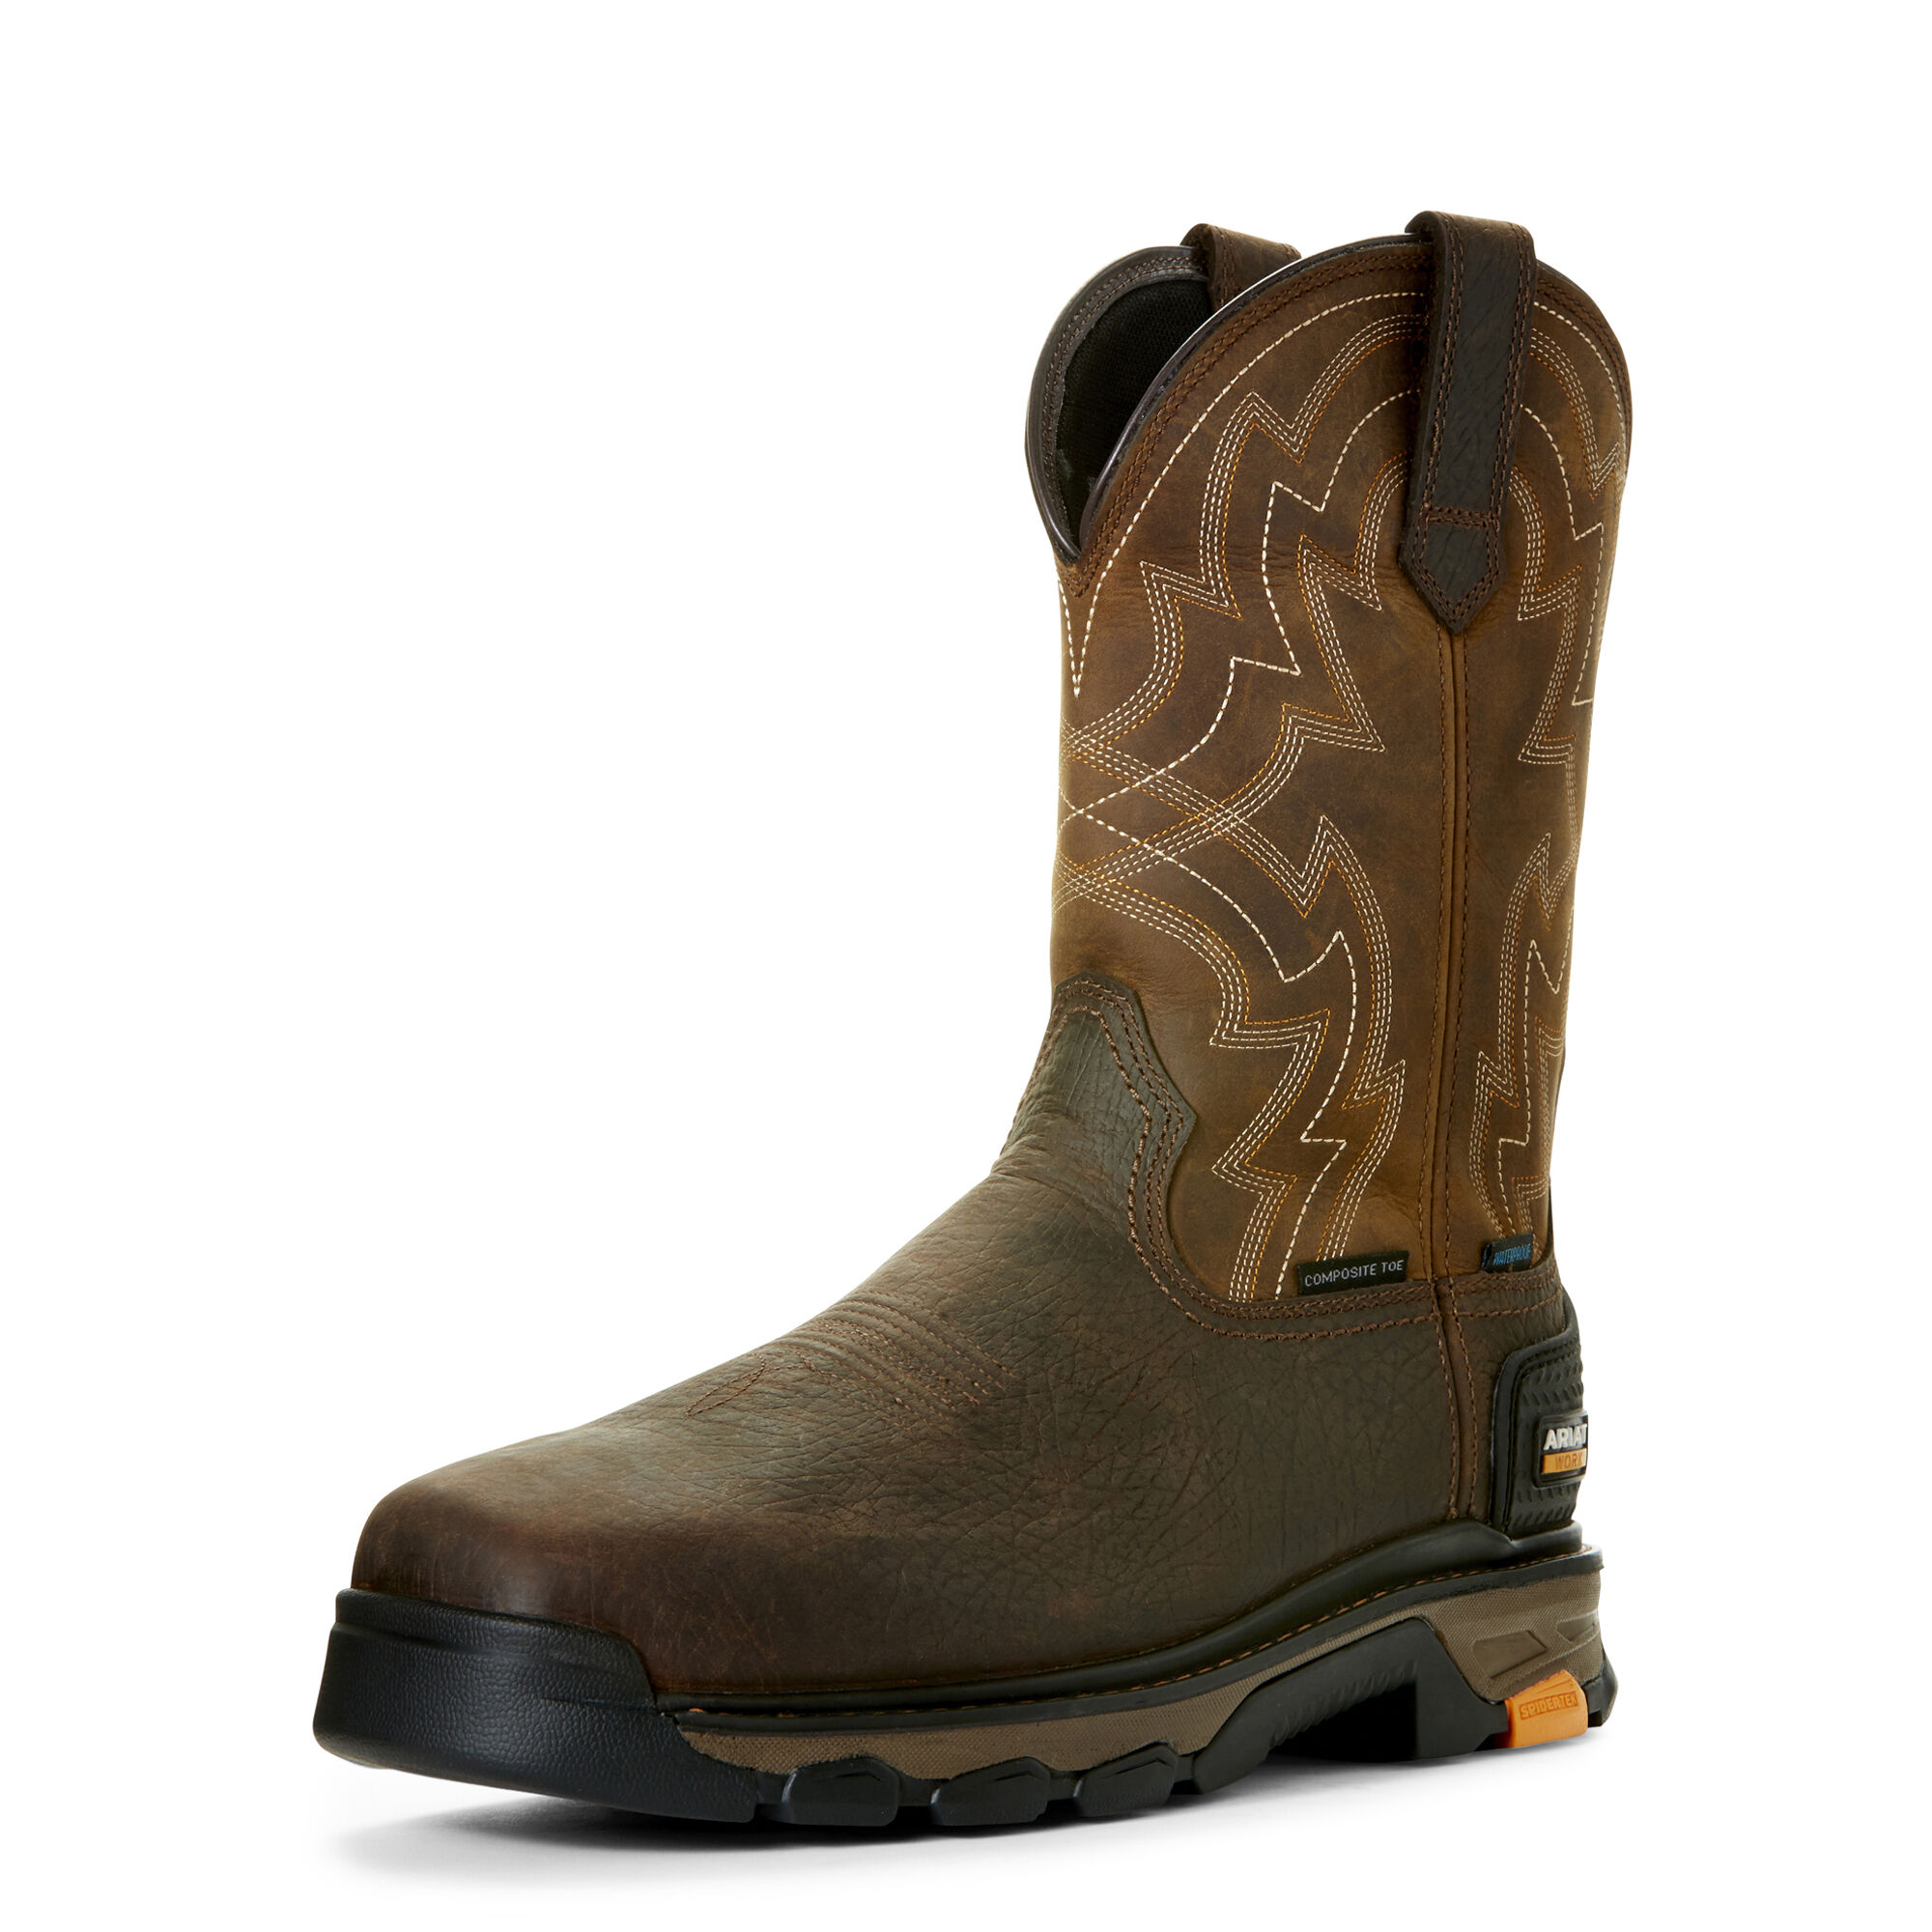 waterproof composite toe boots